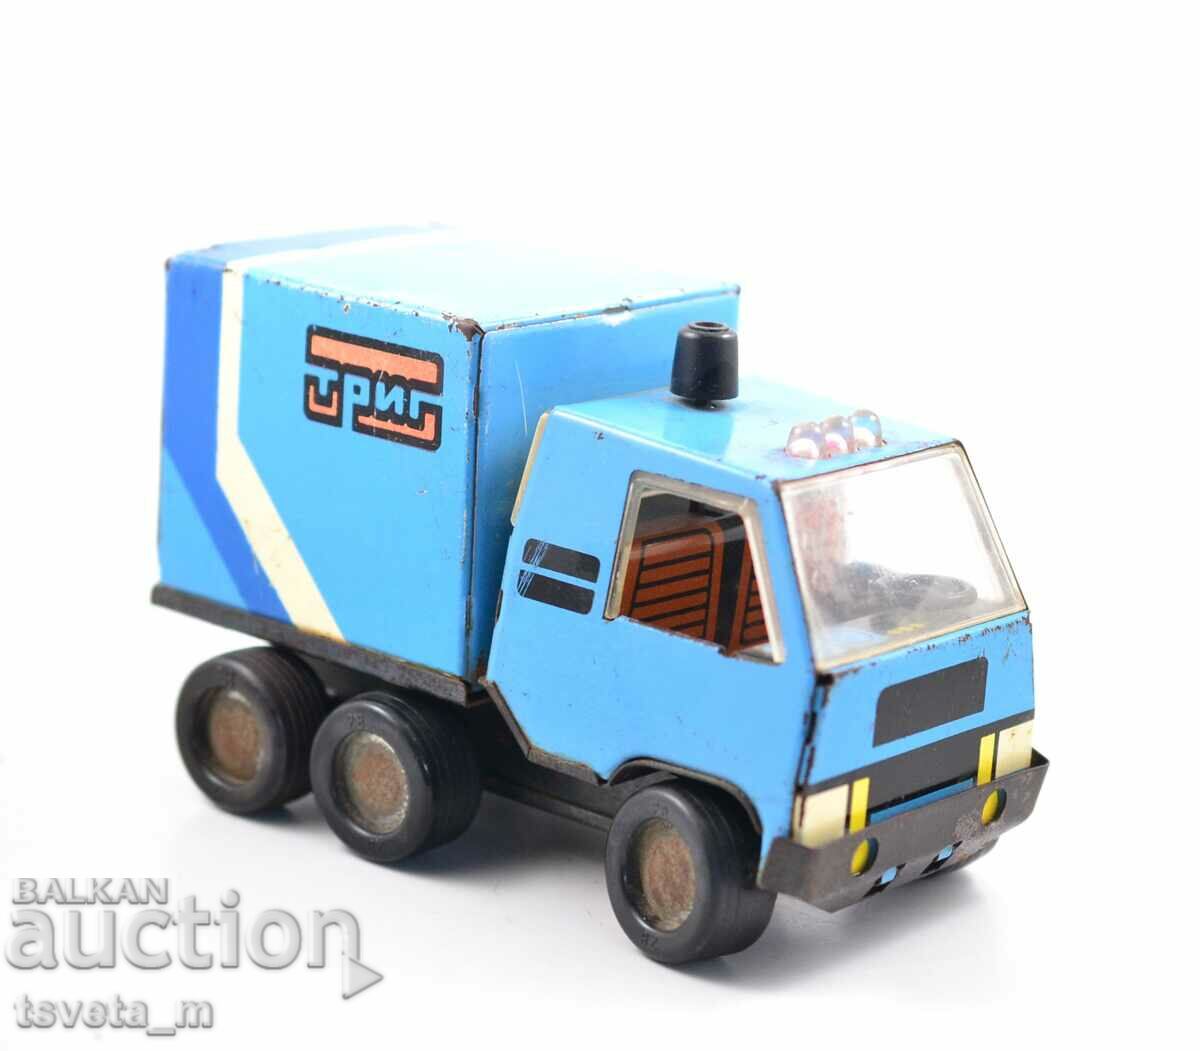 Metal children's toy truck - social